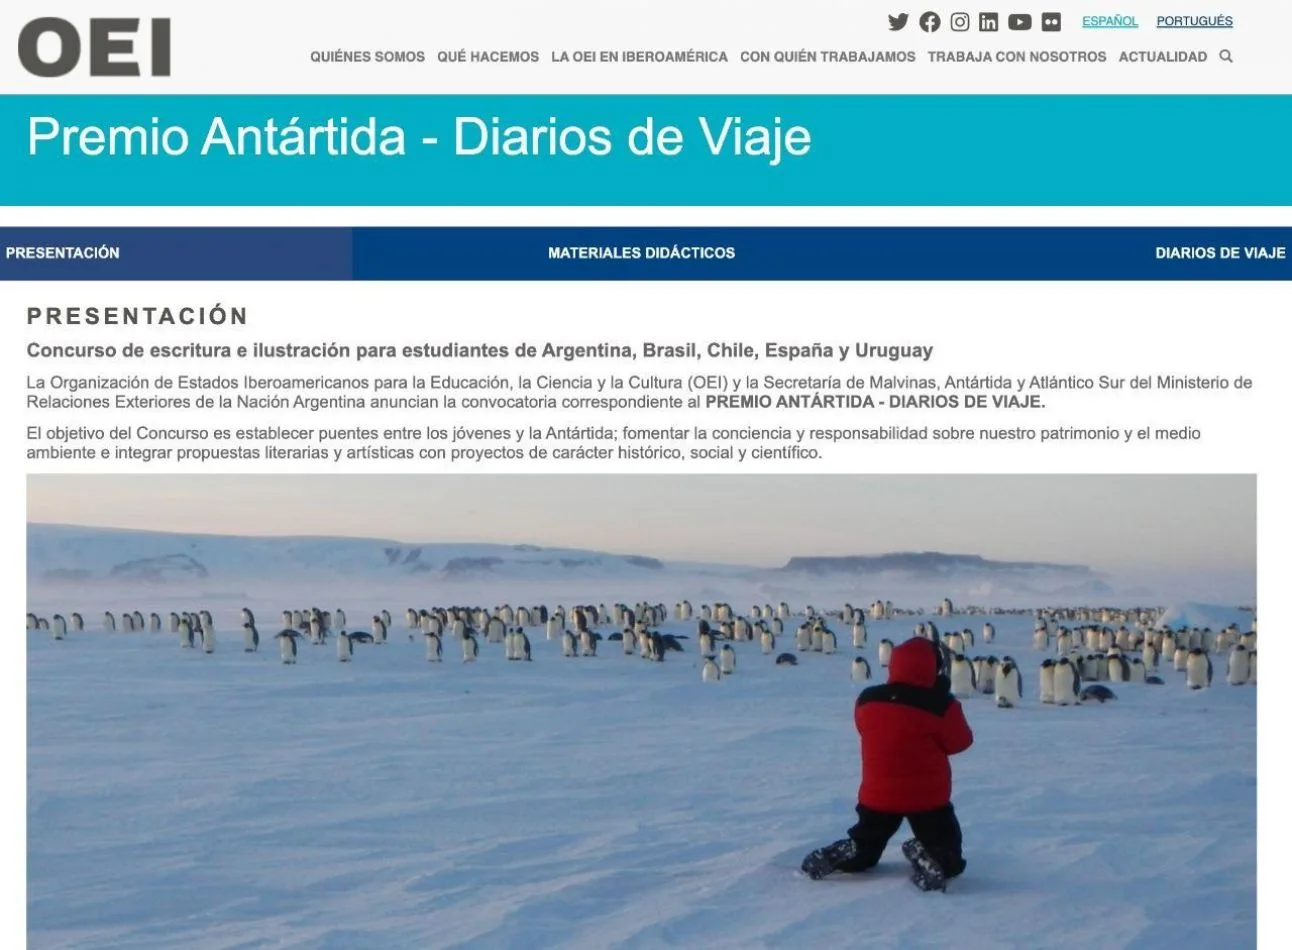 Concurso Internacional de Escritura e Ilustración sobre la Antártida